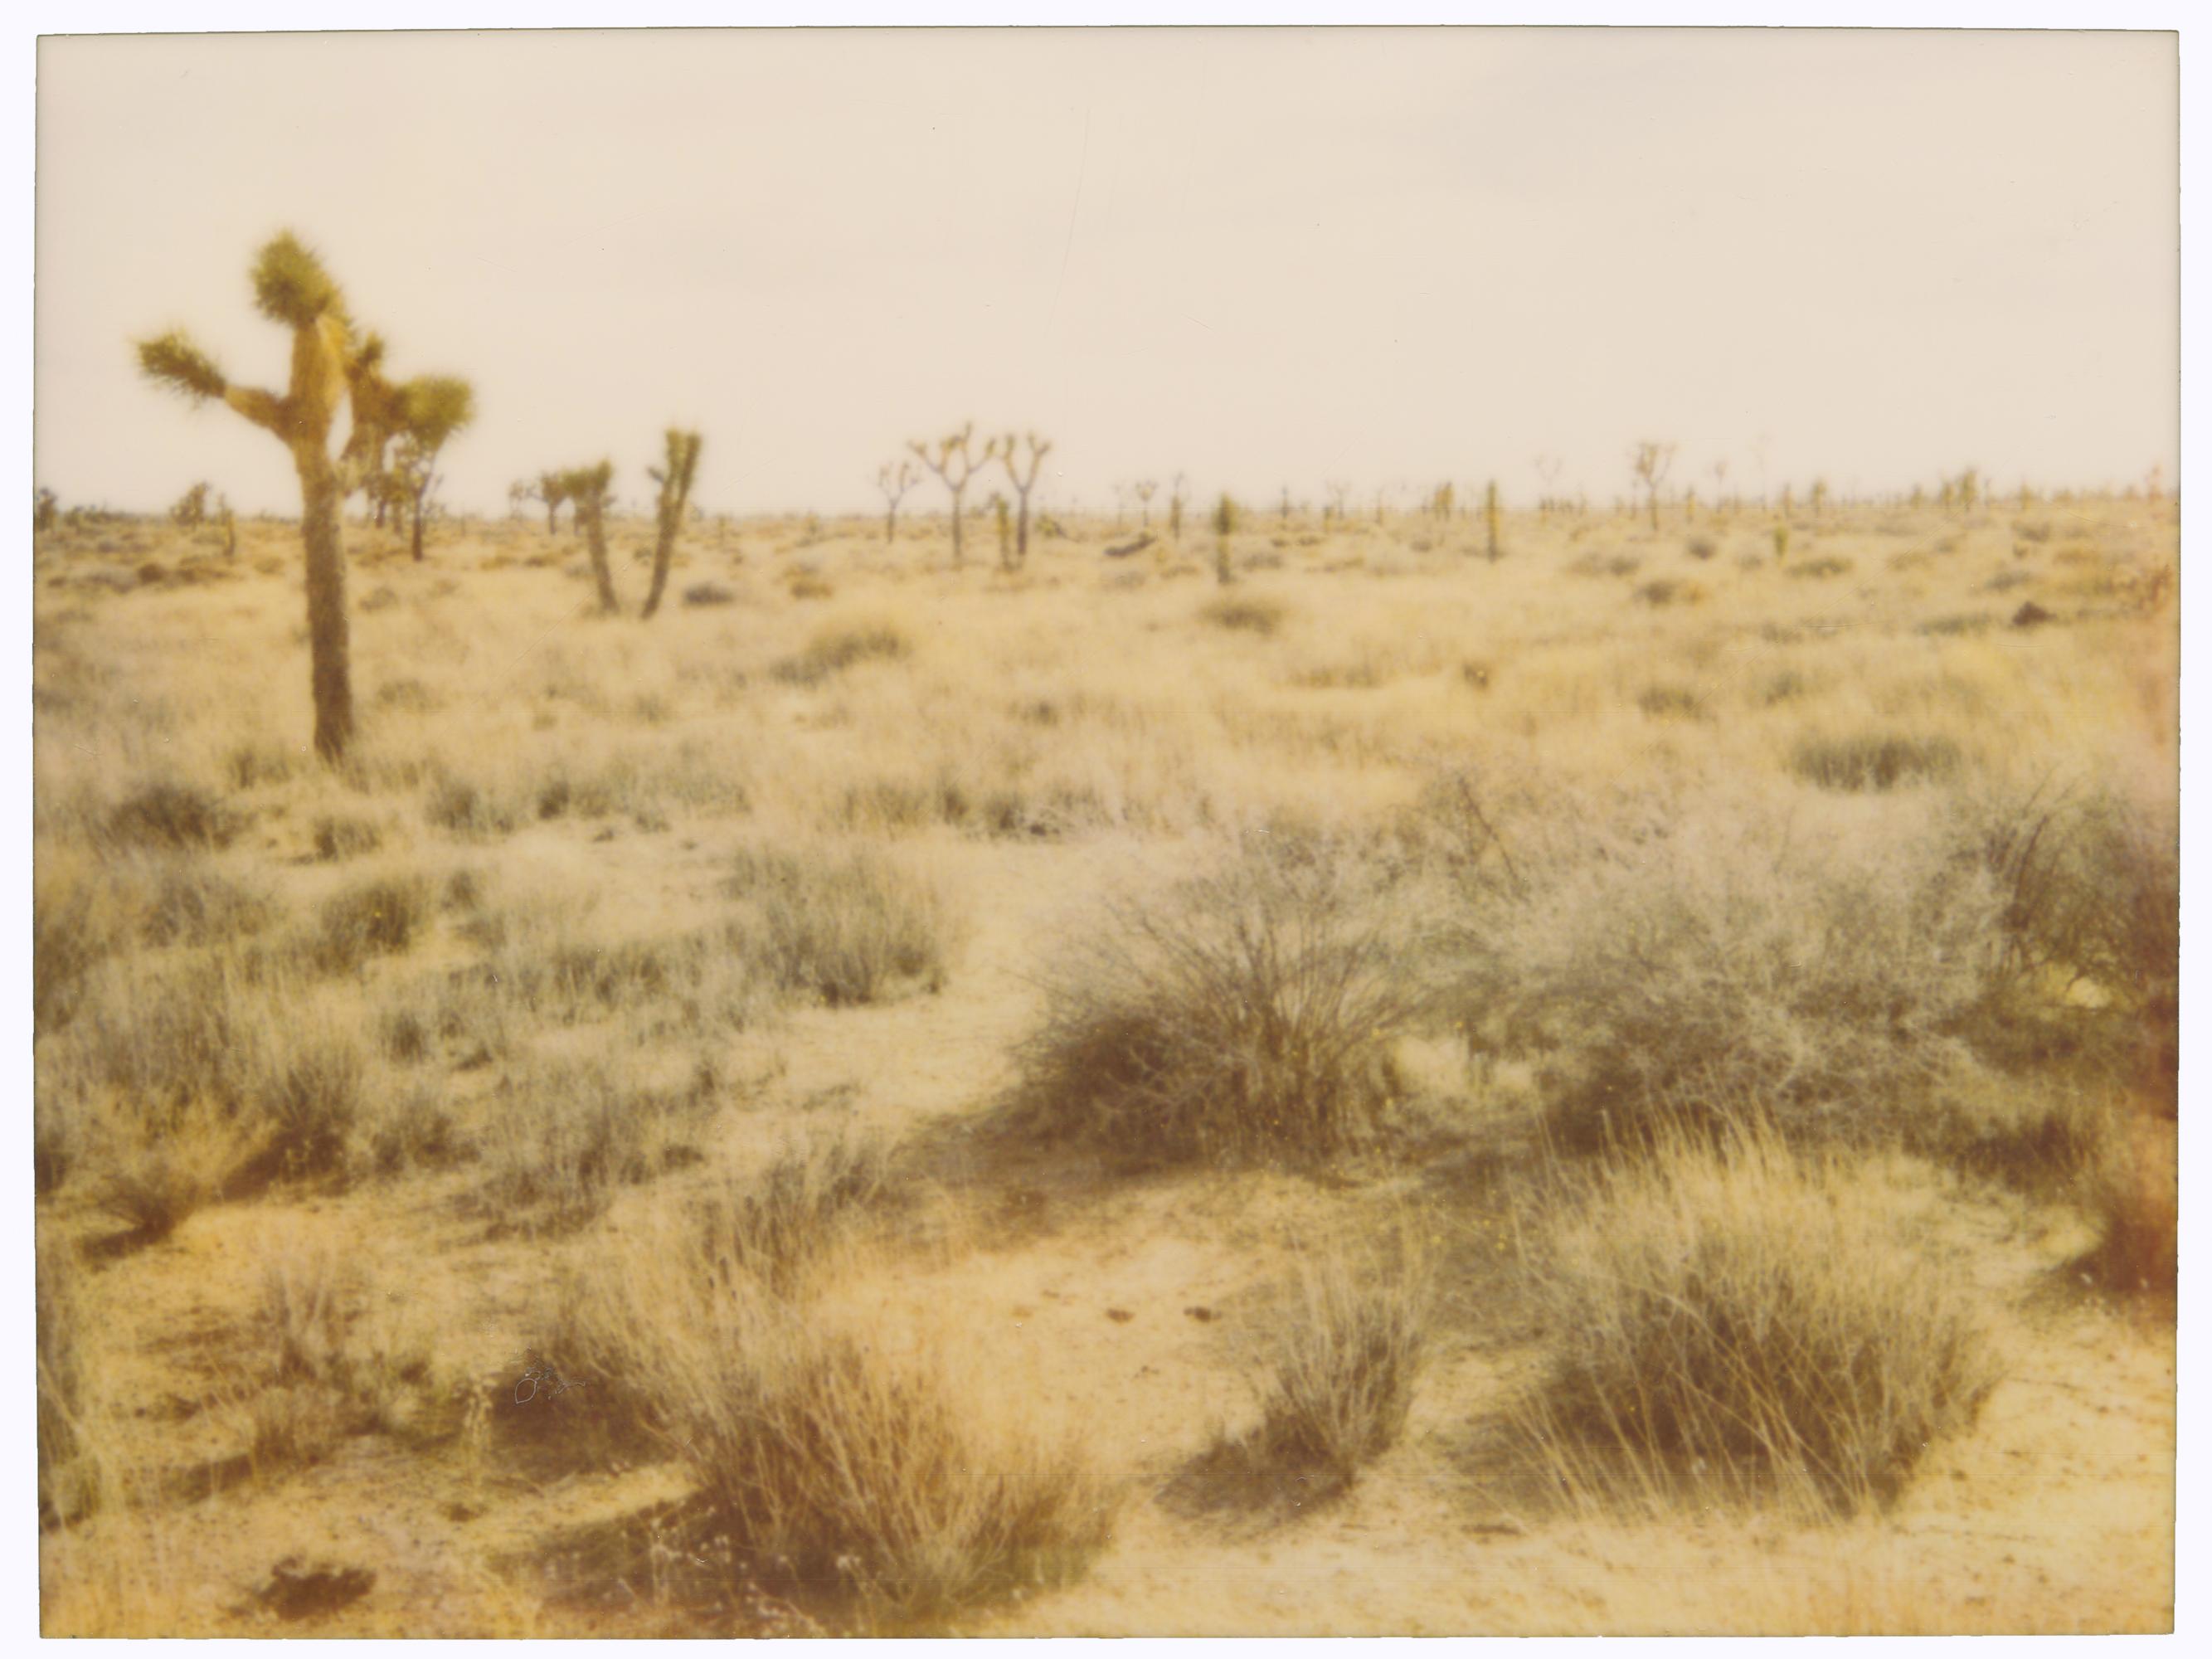 Stefanie Schneider Color Photograph - Joshua Tree National Park (29 Palms, CA) - analog